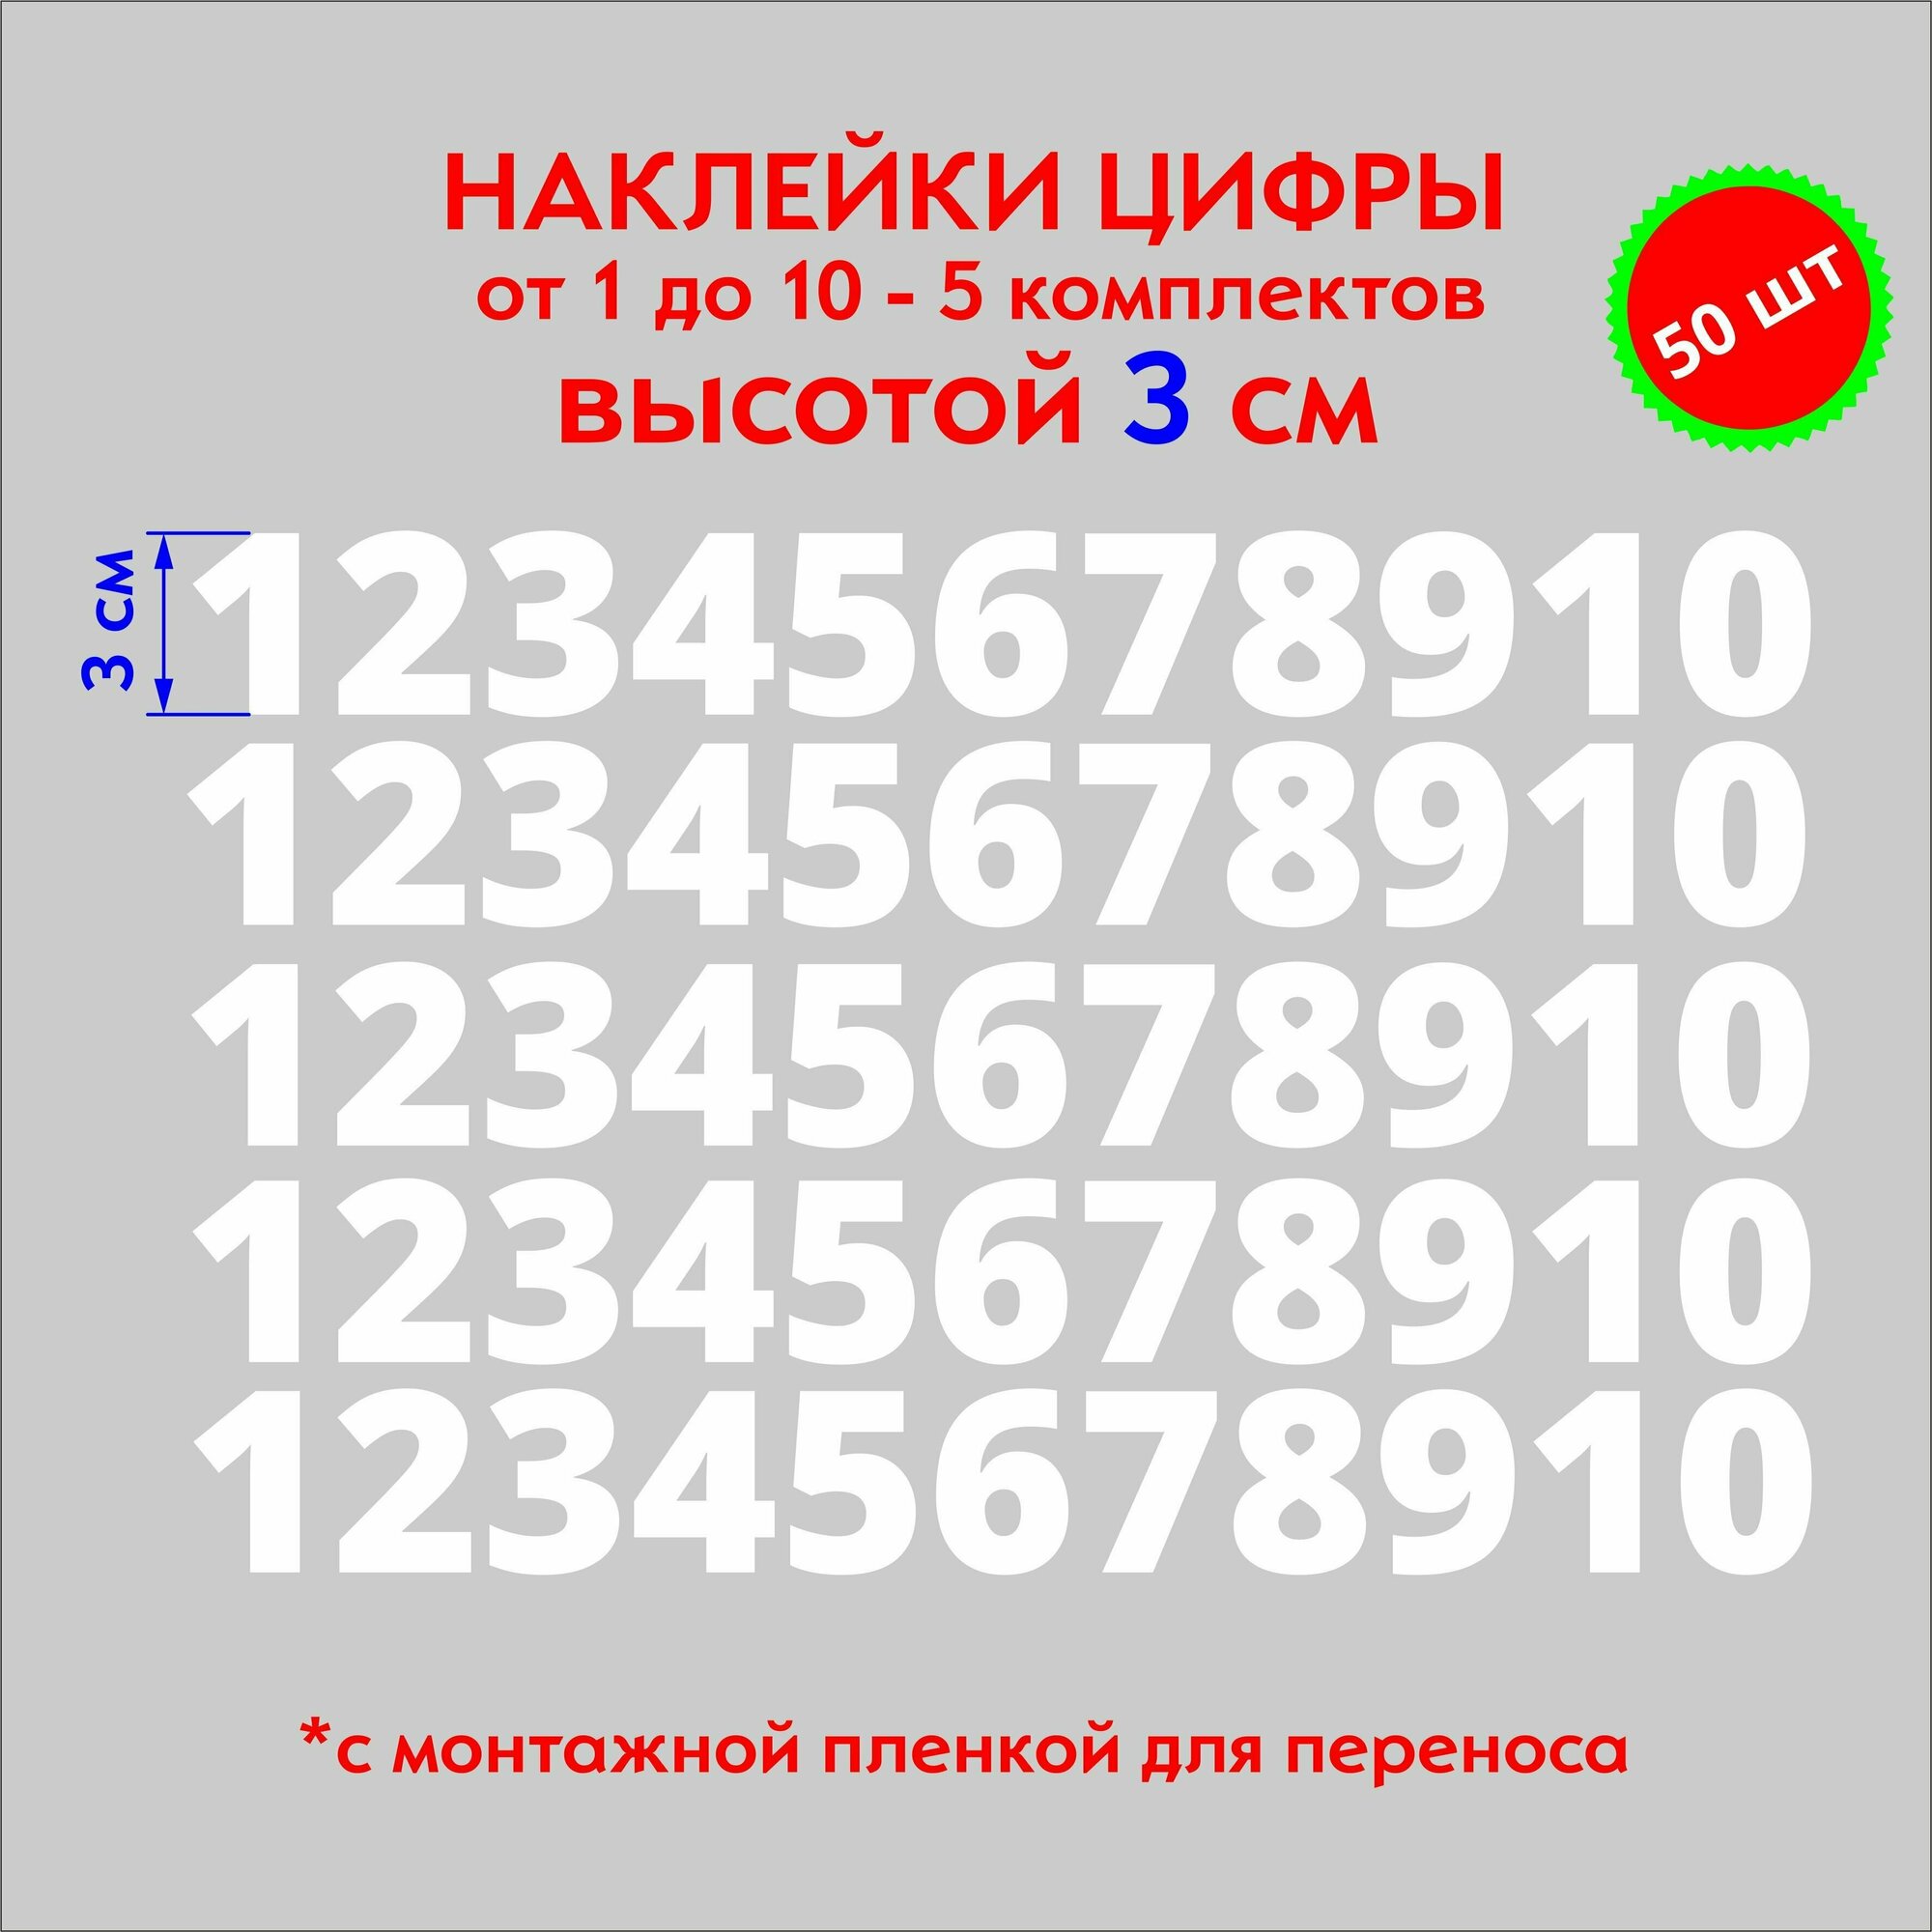 Наклейки цифры белые, стикеры самоклеящиеся от 1 до 10, высота 3 см